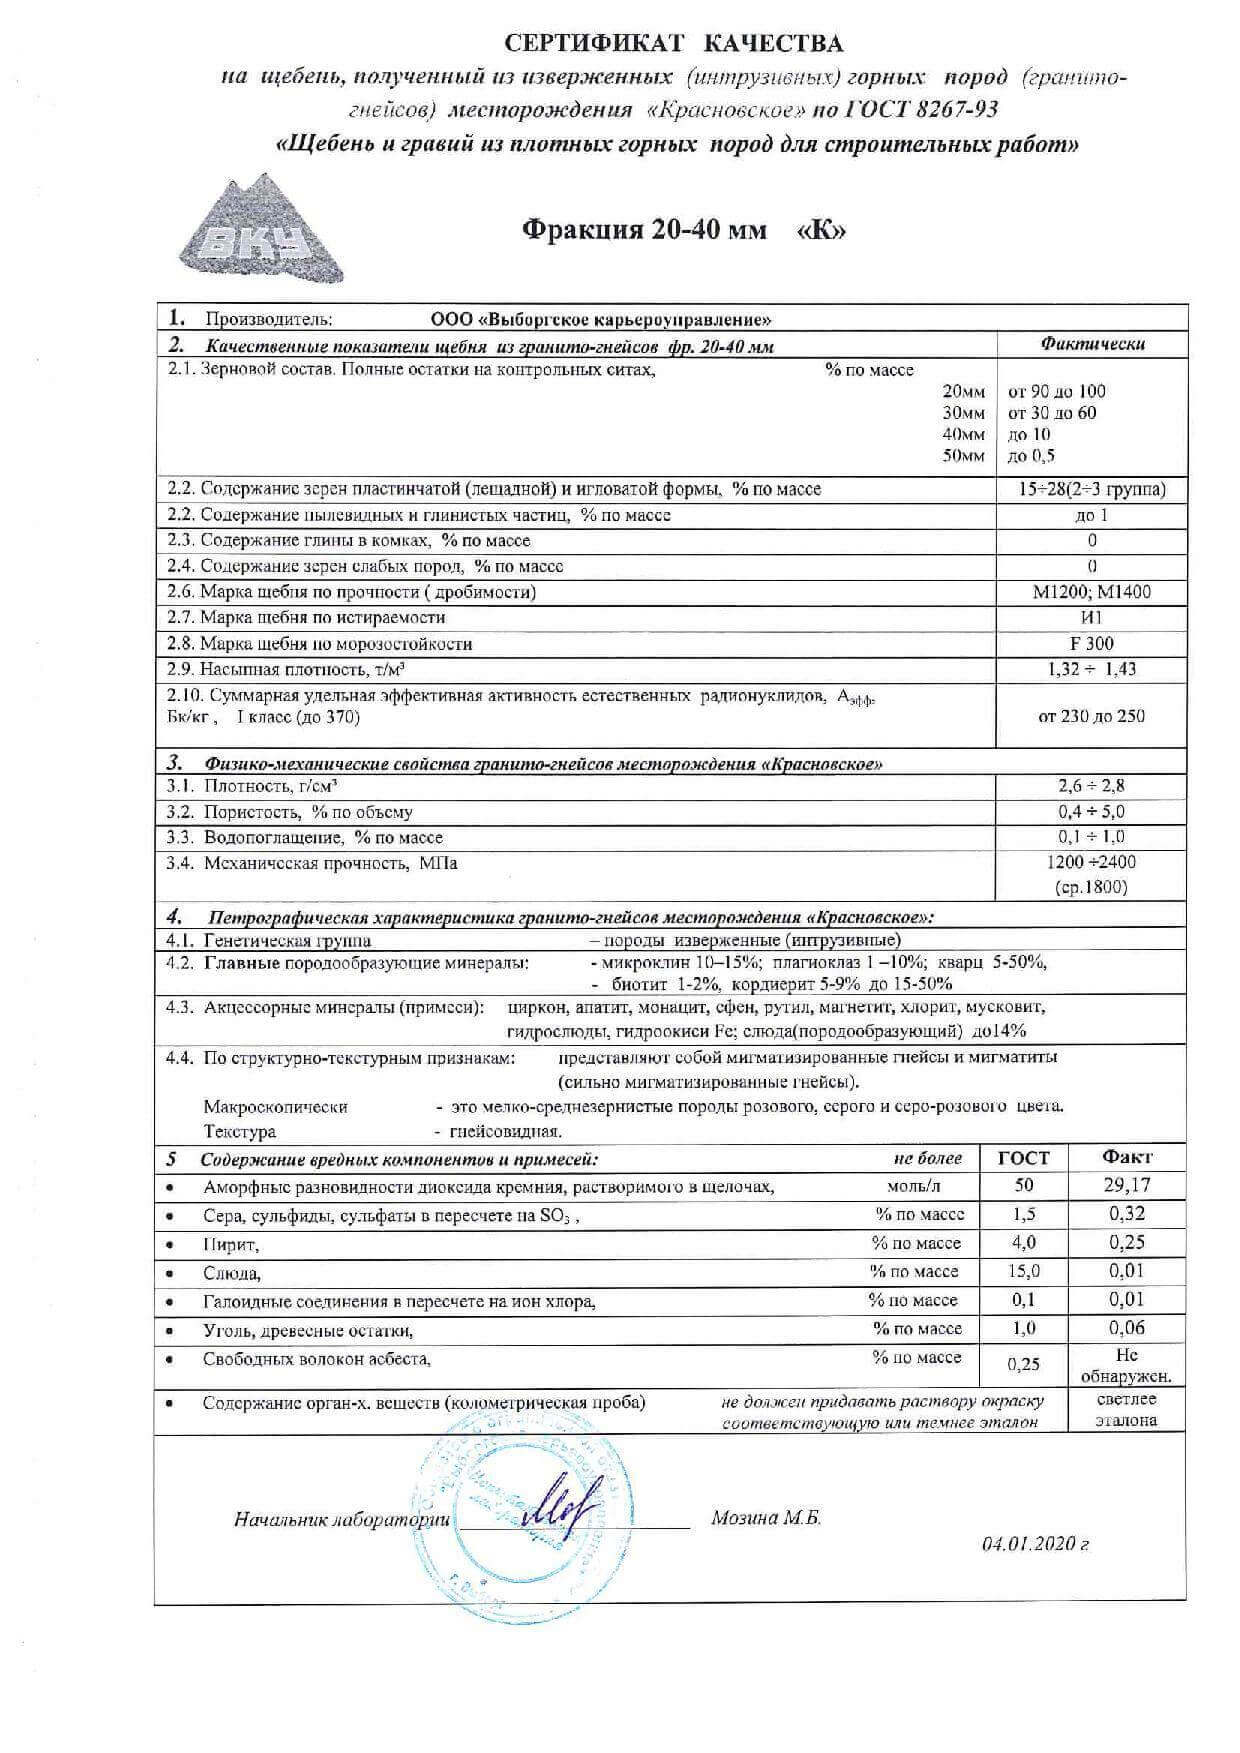 сертификат на щебень гравийный фр 5-20